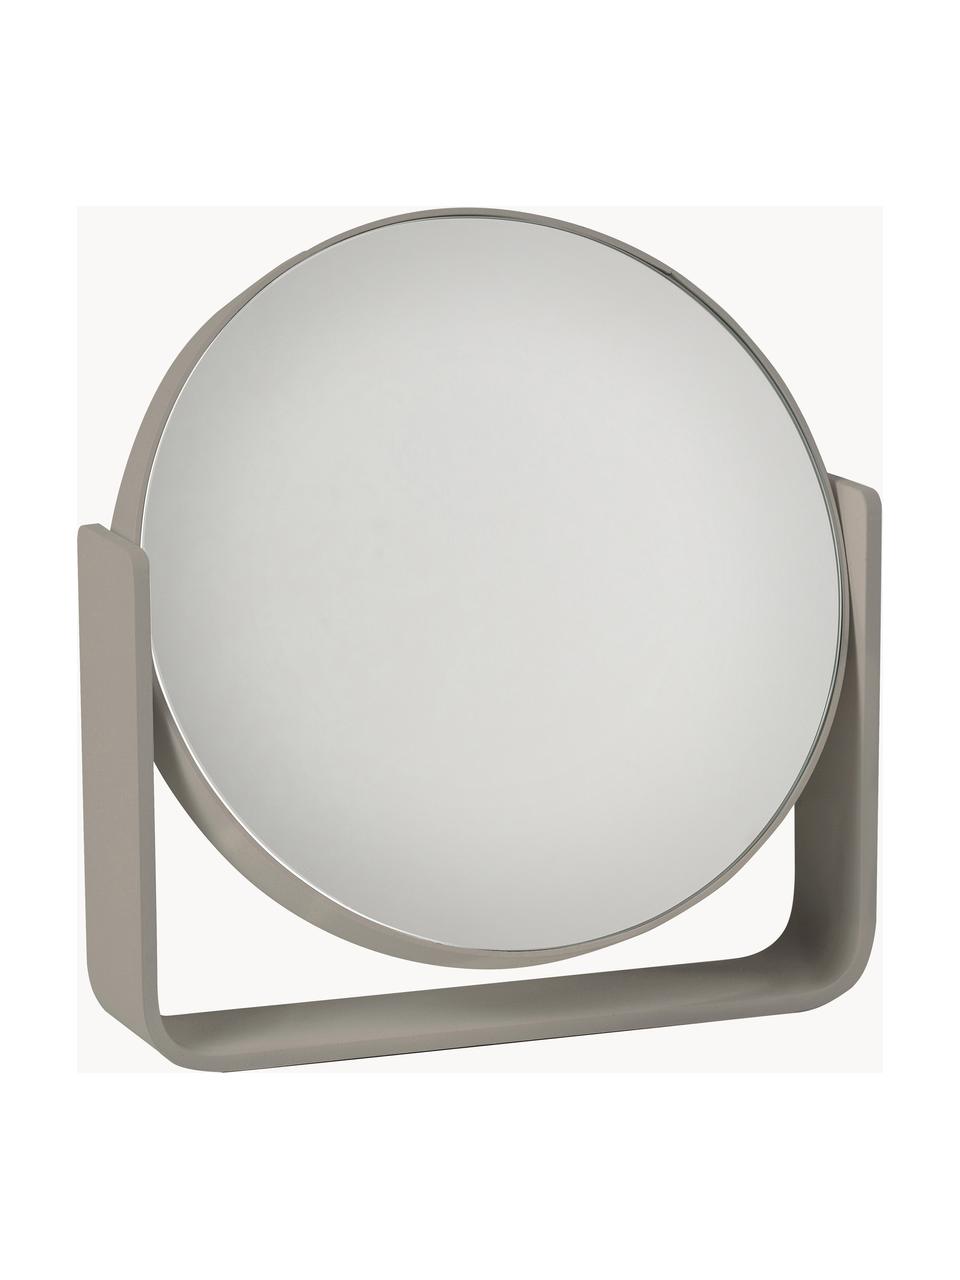 Runder Kosmetikspiegel Ume mit Vergrösserung, Taupe, B 19 x H 20 cm